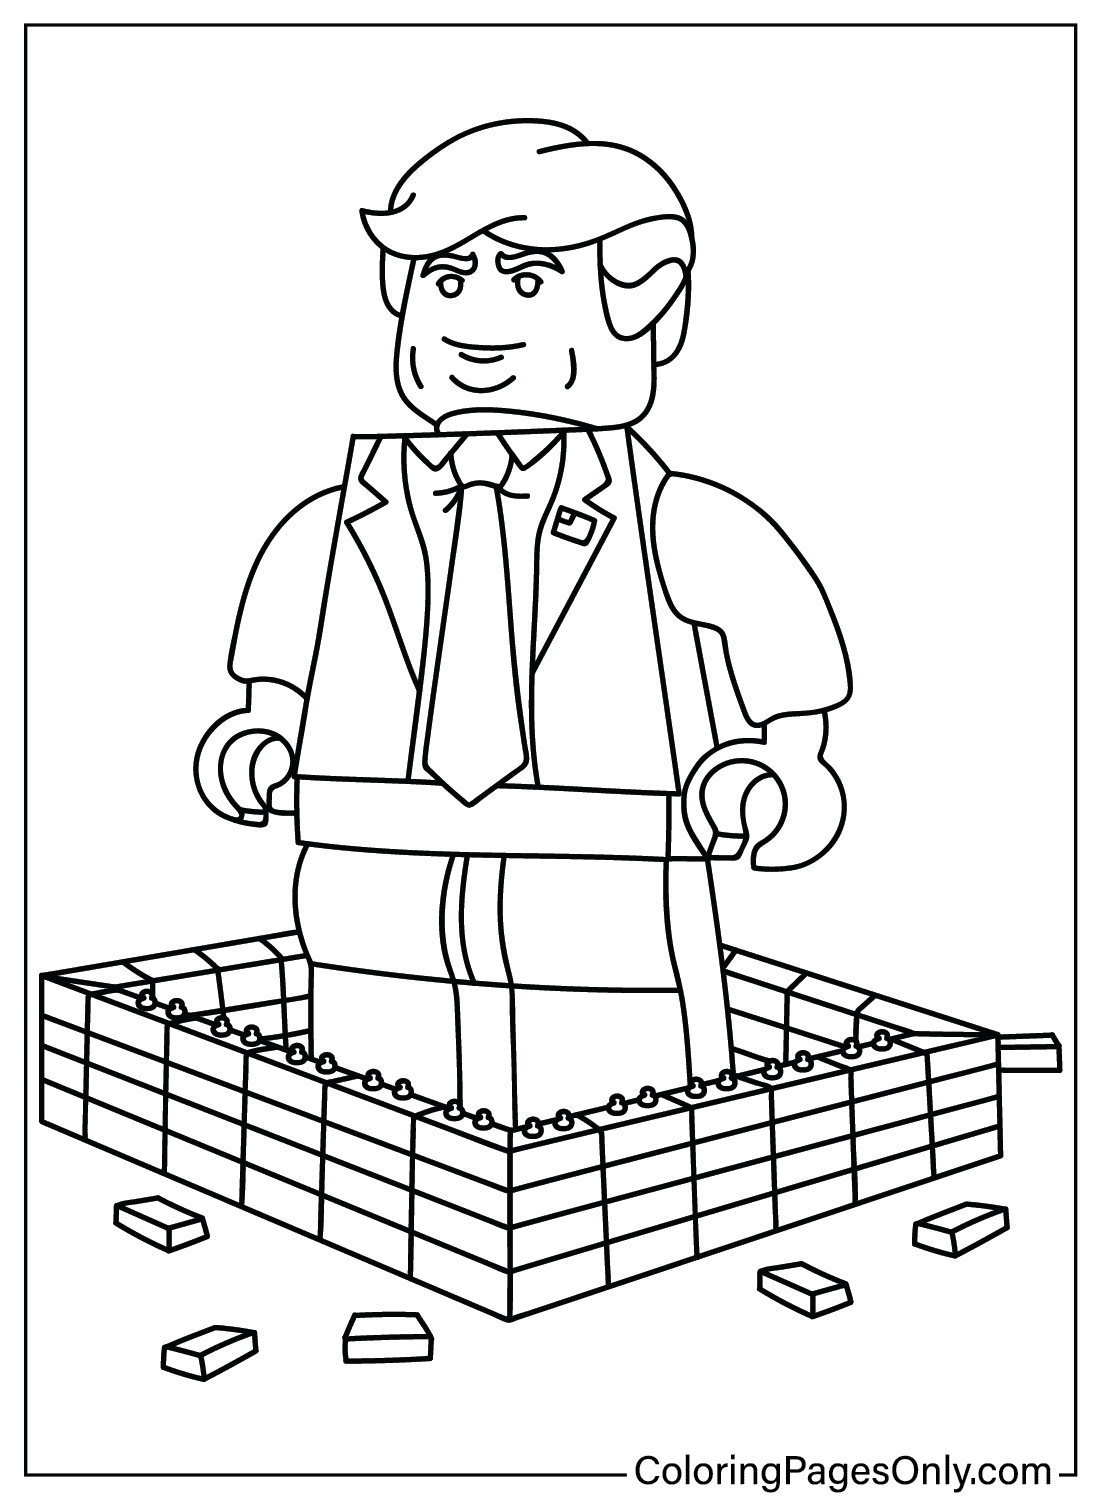 Lego Donald Trump Malvorlagen zum Ausdrucken von Donald Trump